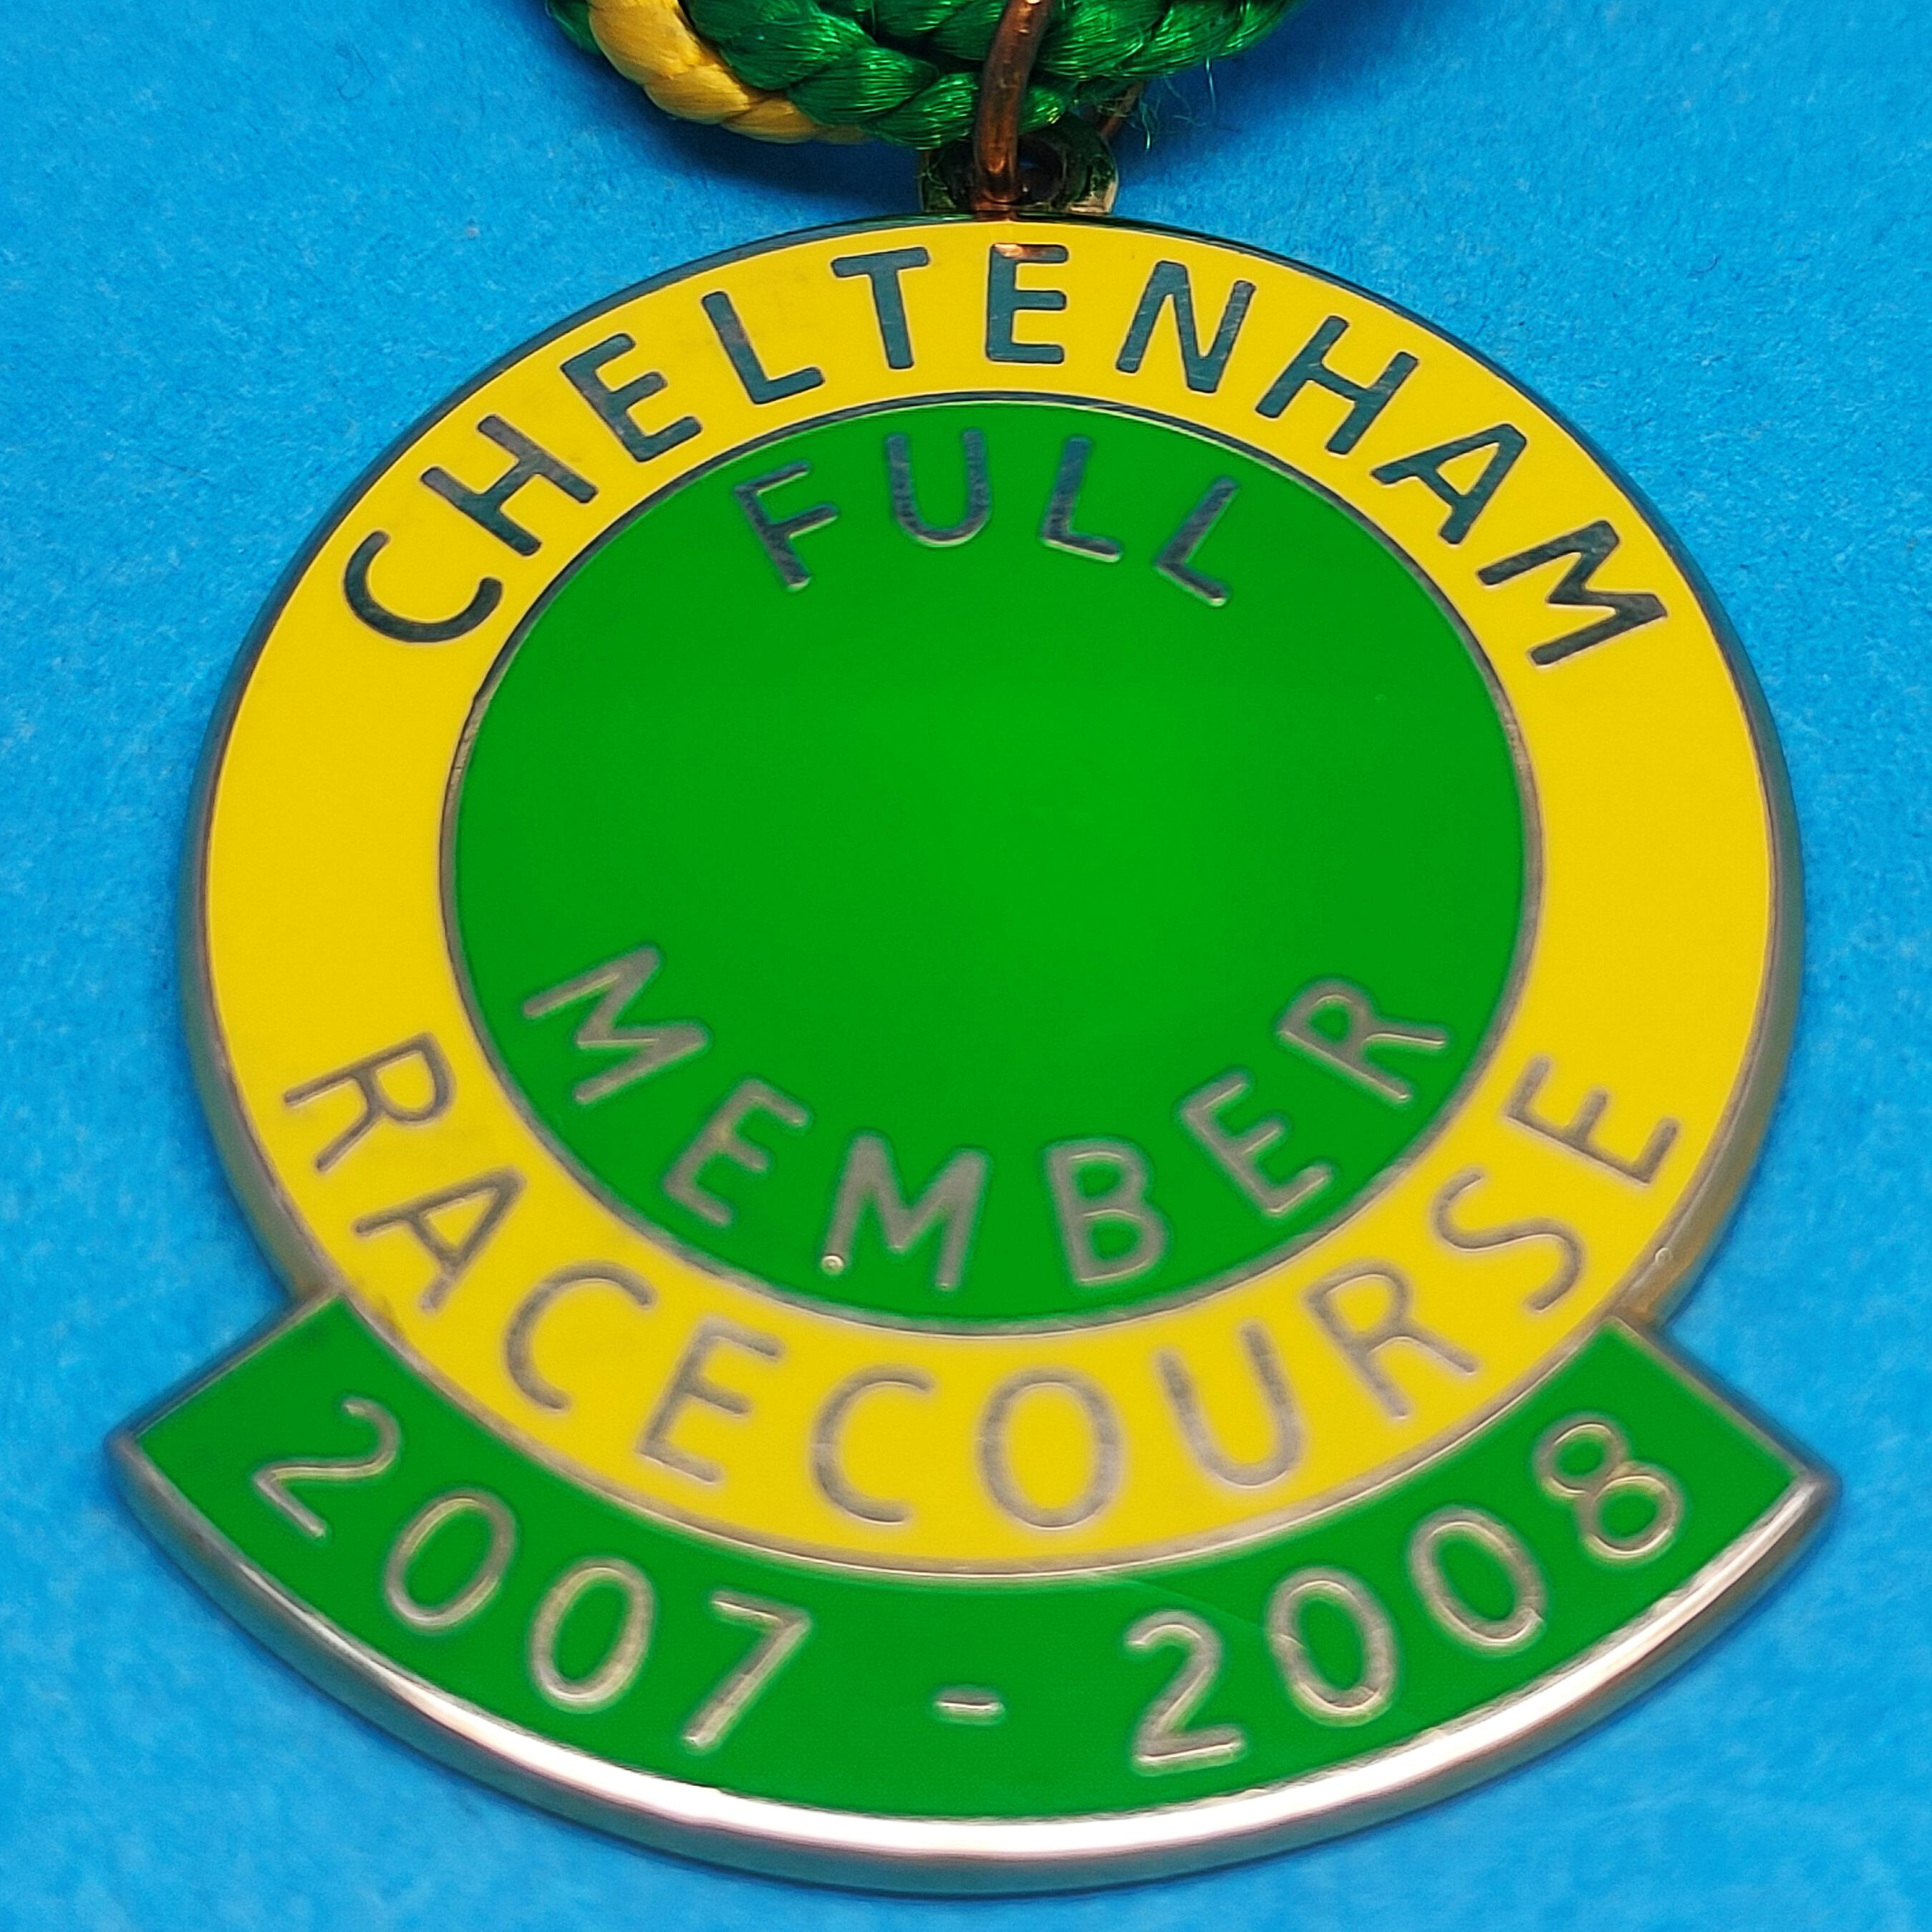 Cheltenham 2007 / 2008